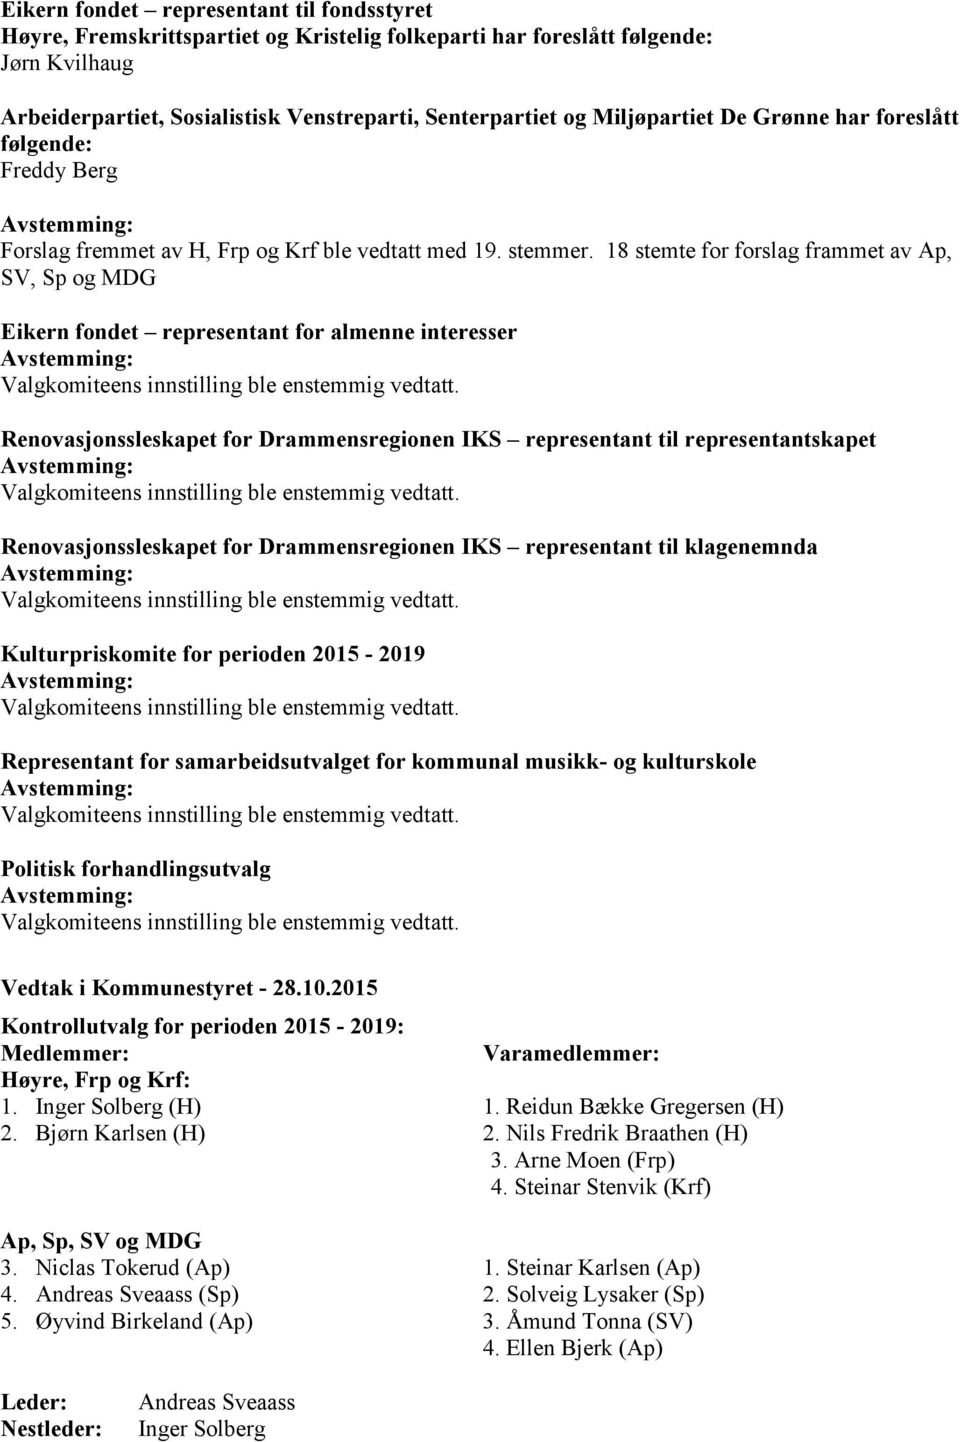 18 stemte for forslag frammet av Ap, SV, Sp og MDG Eikern fondet representant for almenne interesser Renovasjonssleskapet for Drammensregionen IKS representant til representantskapet